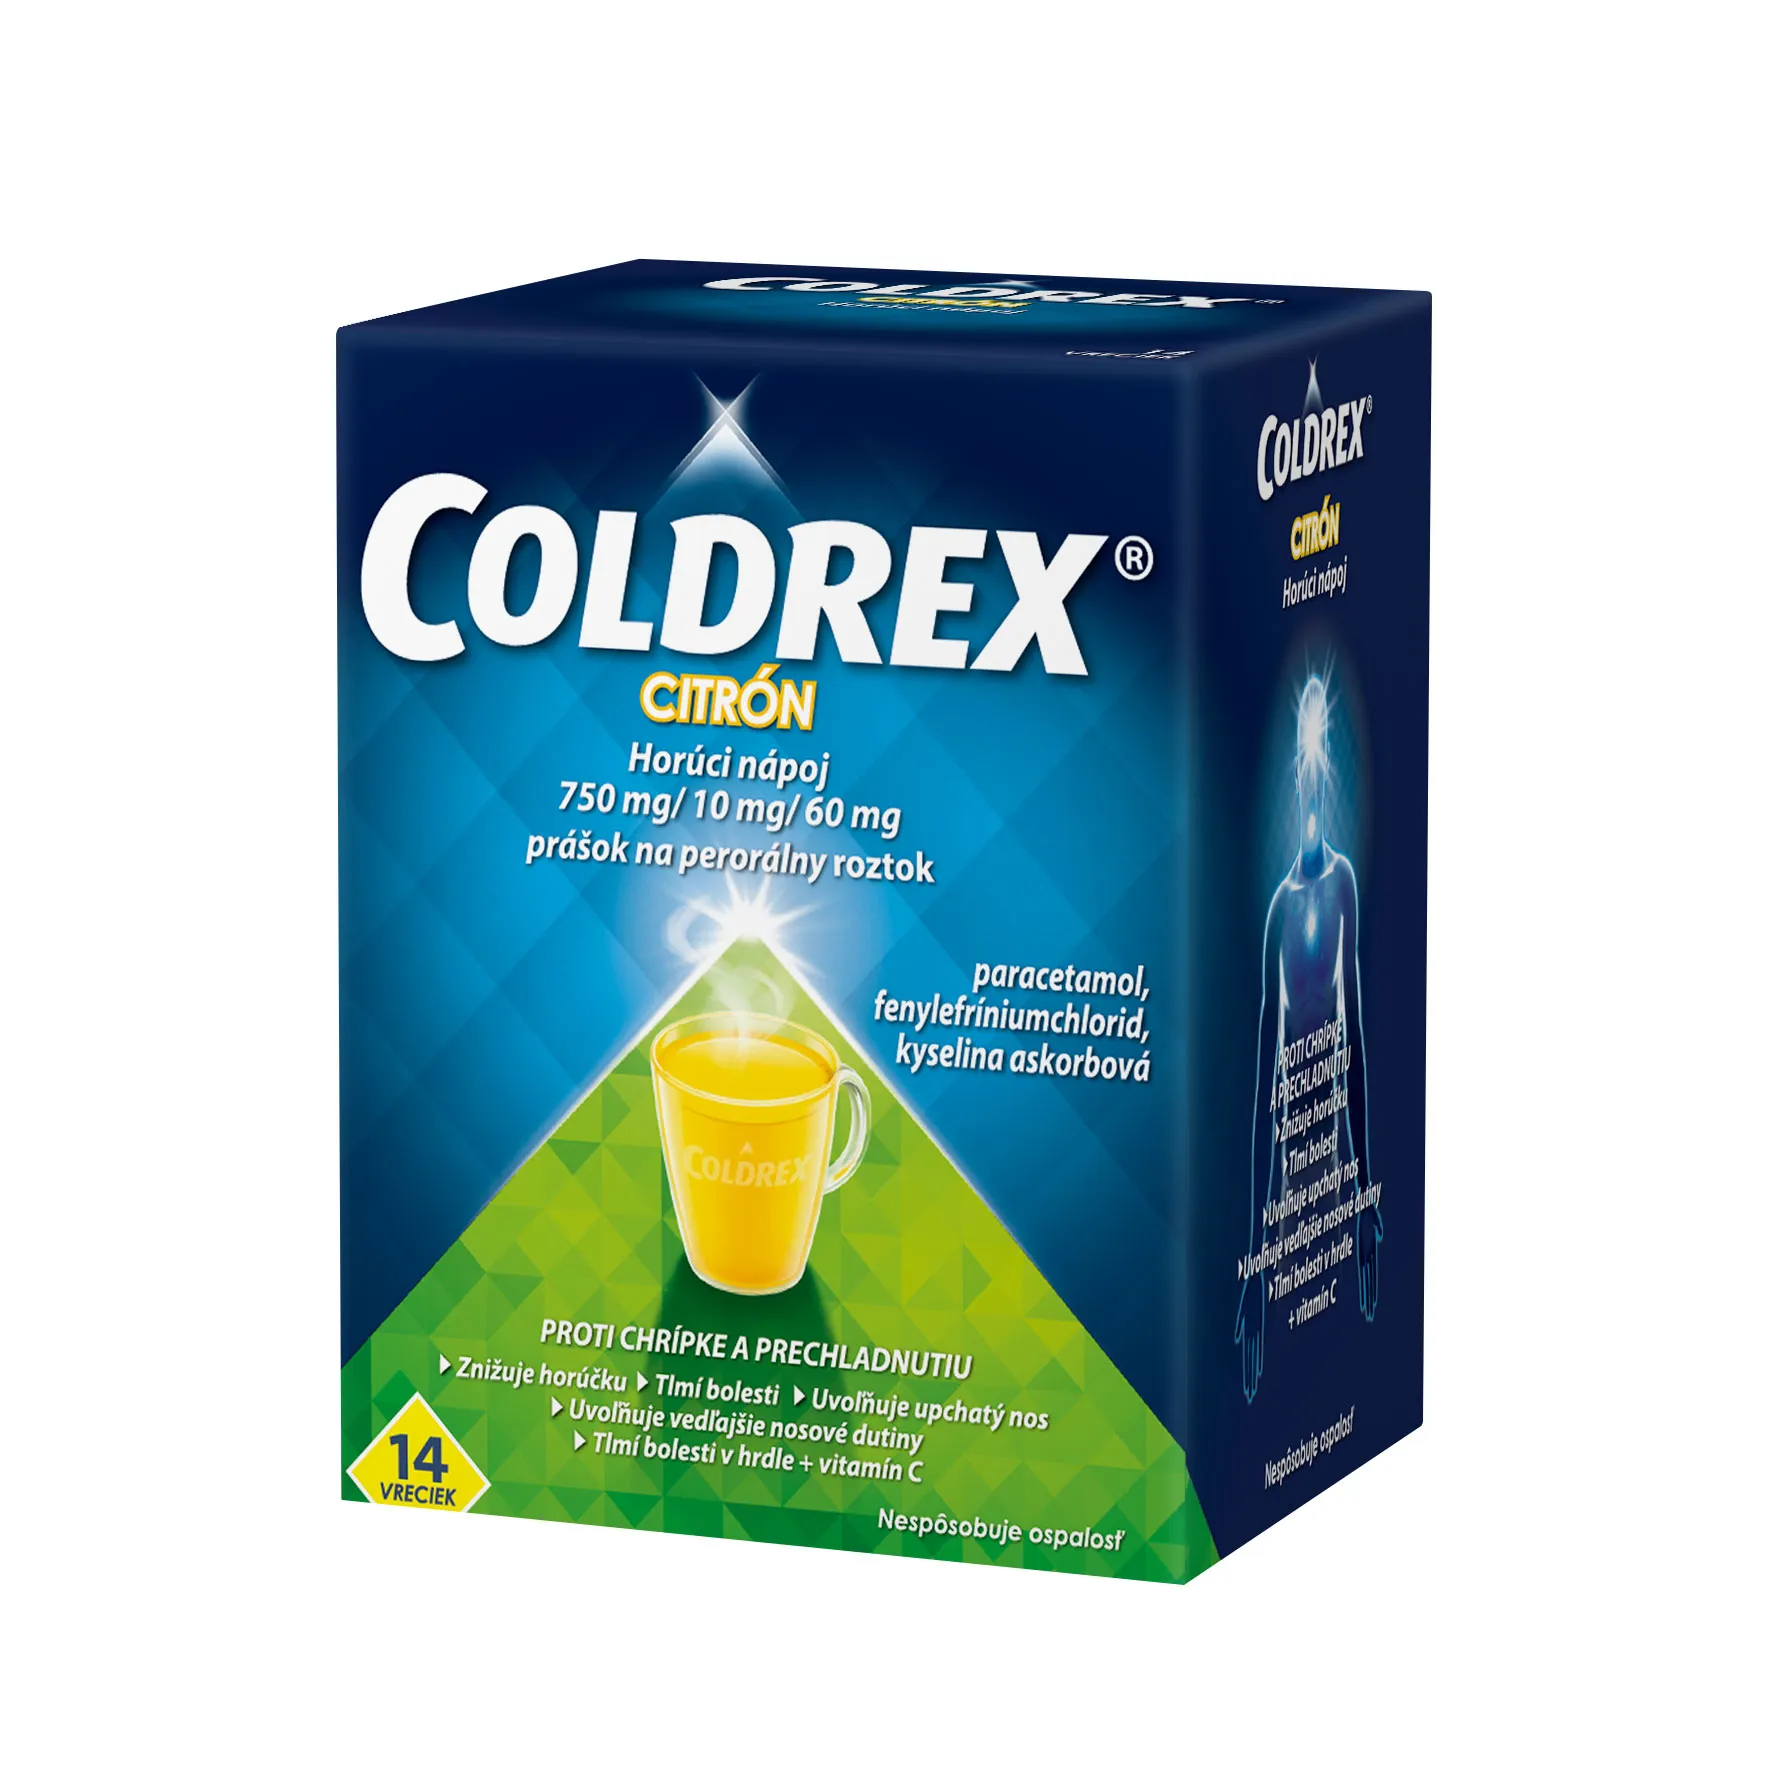 COLDREX Horúci nápoj Citrón, 14 vreciek 1×14 ks, liek proti chrípke a prechladnutiu